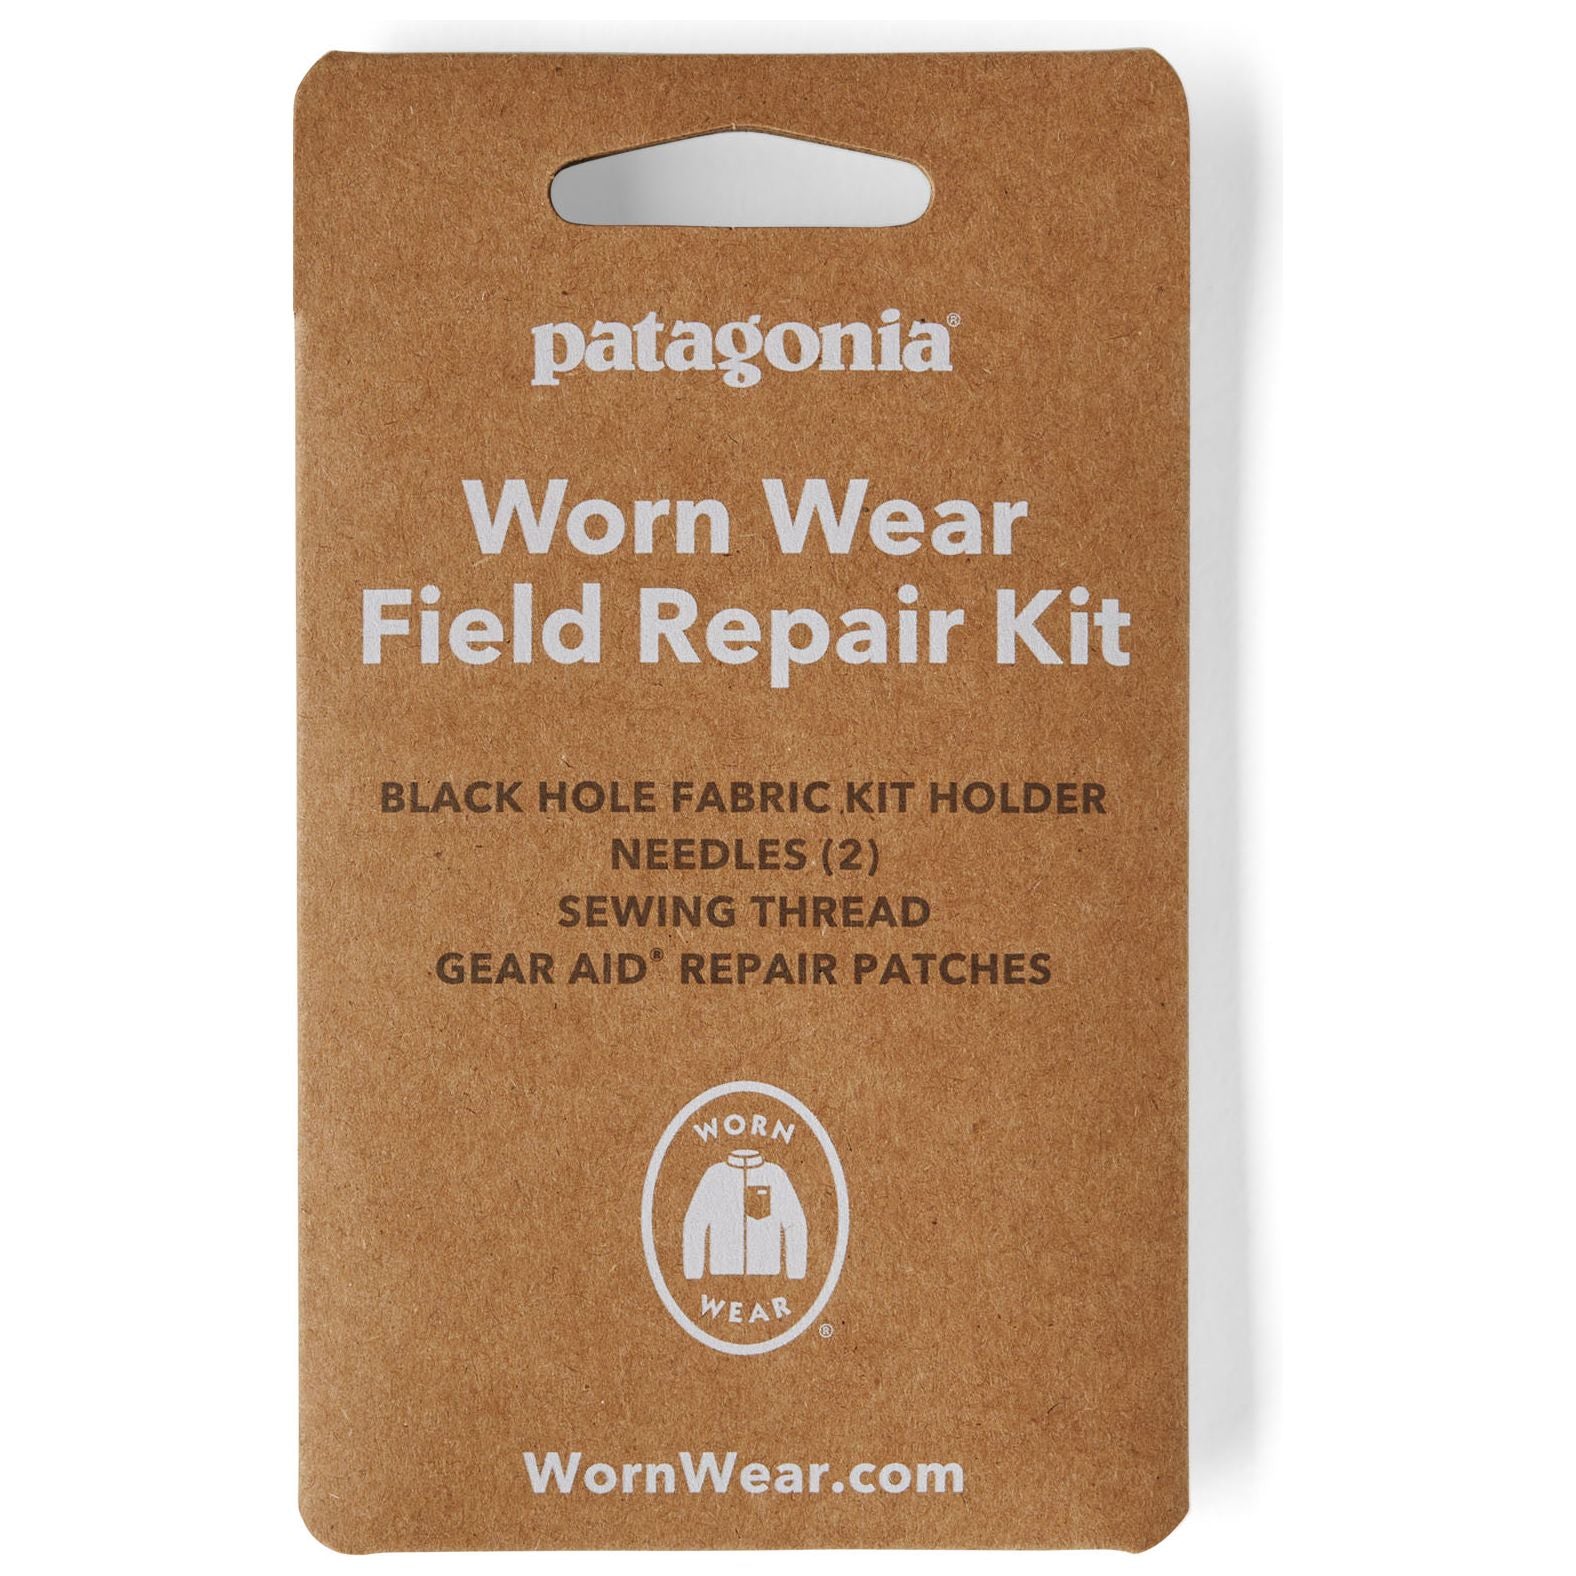 Patagonia Worn Wear Field Repair Kit Black Image 01